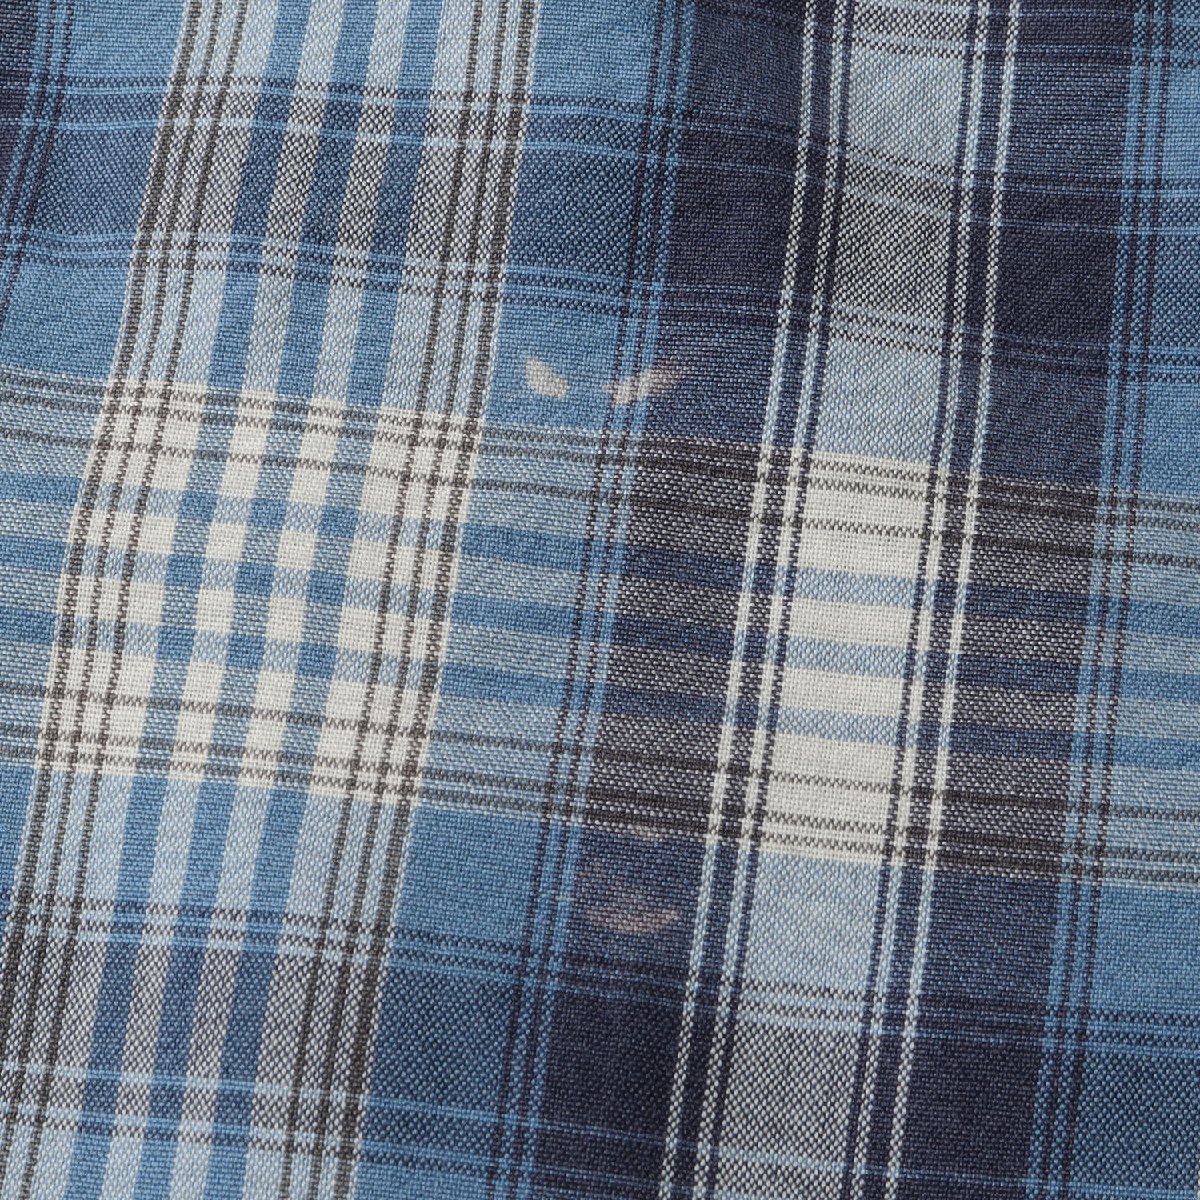 POLO JEANS CO. ポロ ジーンズ カンパニー 90s チェック 半袖 ボタンシャツ 90年代 オールドラルフローレン ビッグサイズ ライトブルー M_画像7